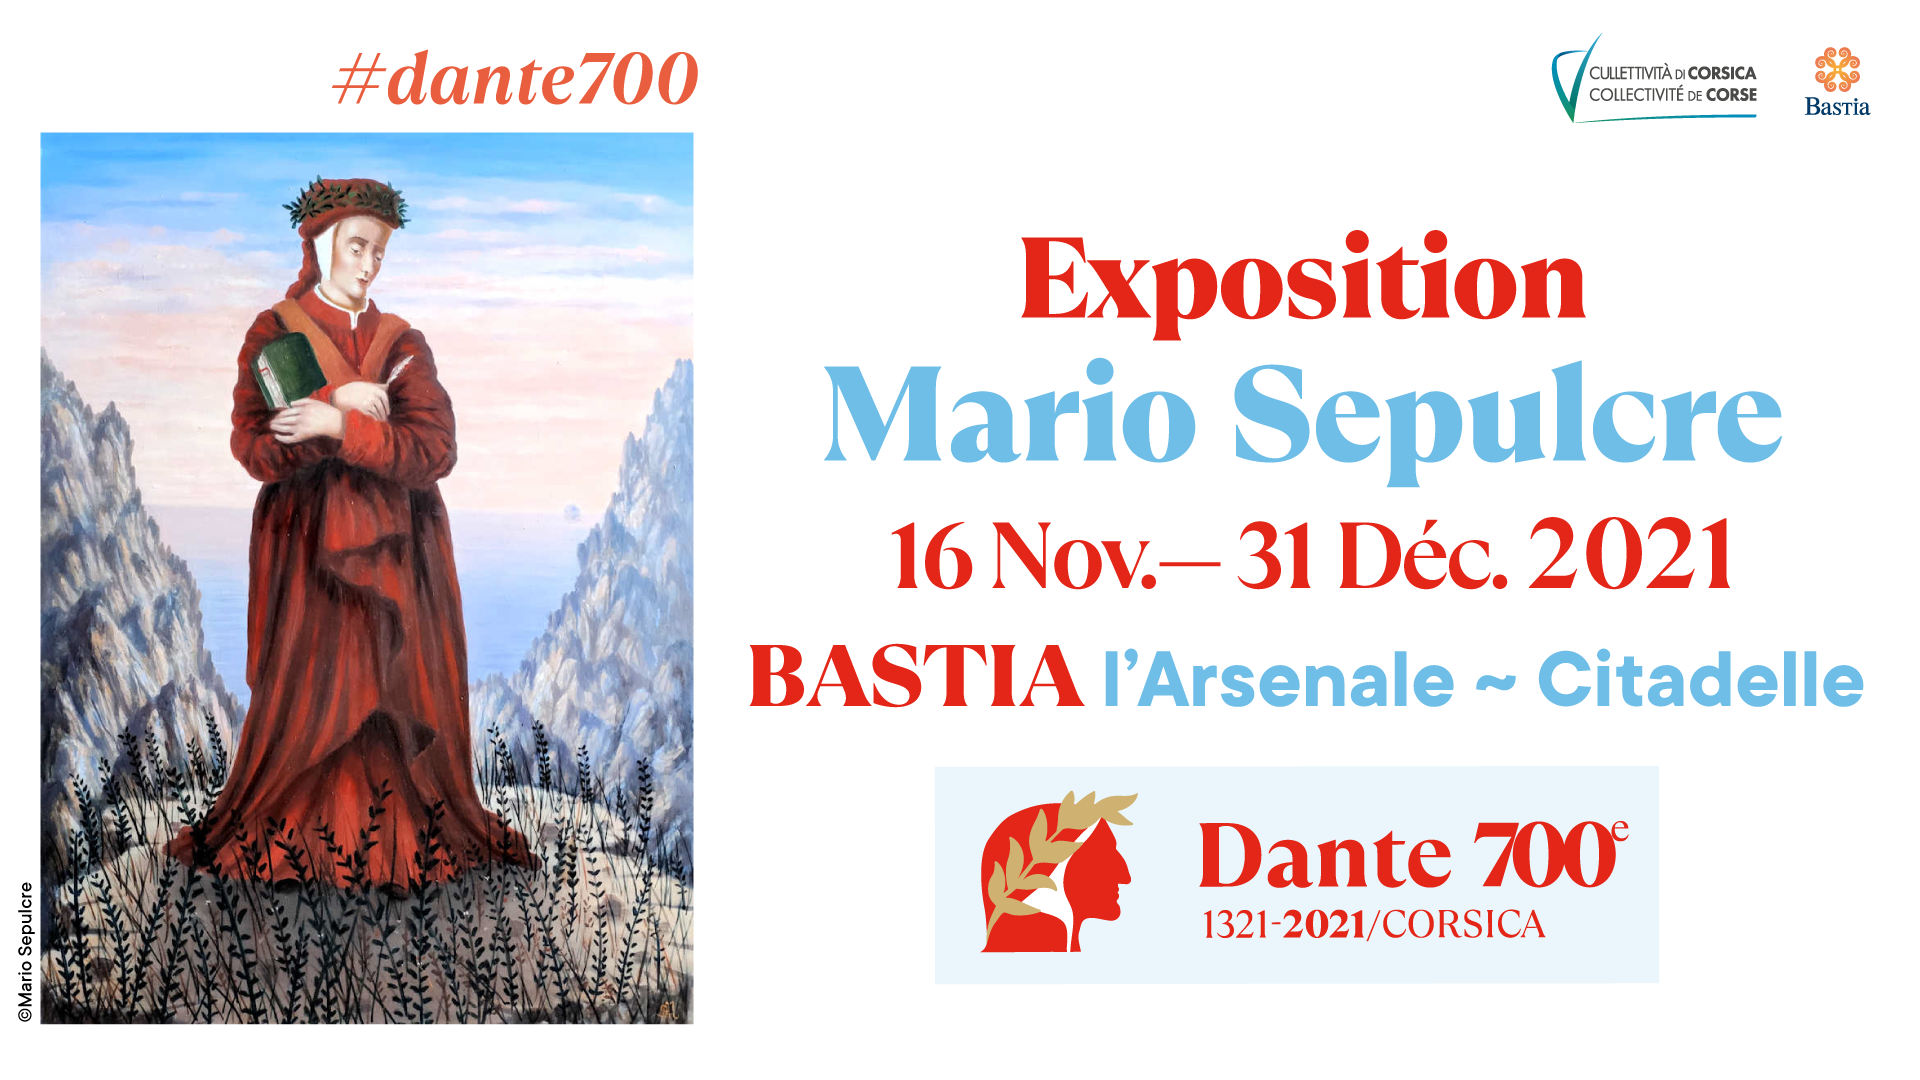 "Dantissimu !" Une programmation événement à l'occasion des 700 ans de la mort de Dante